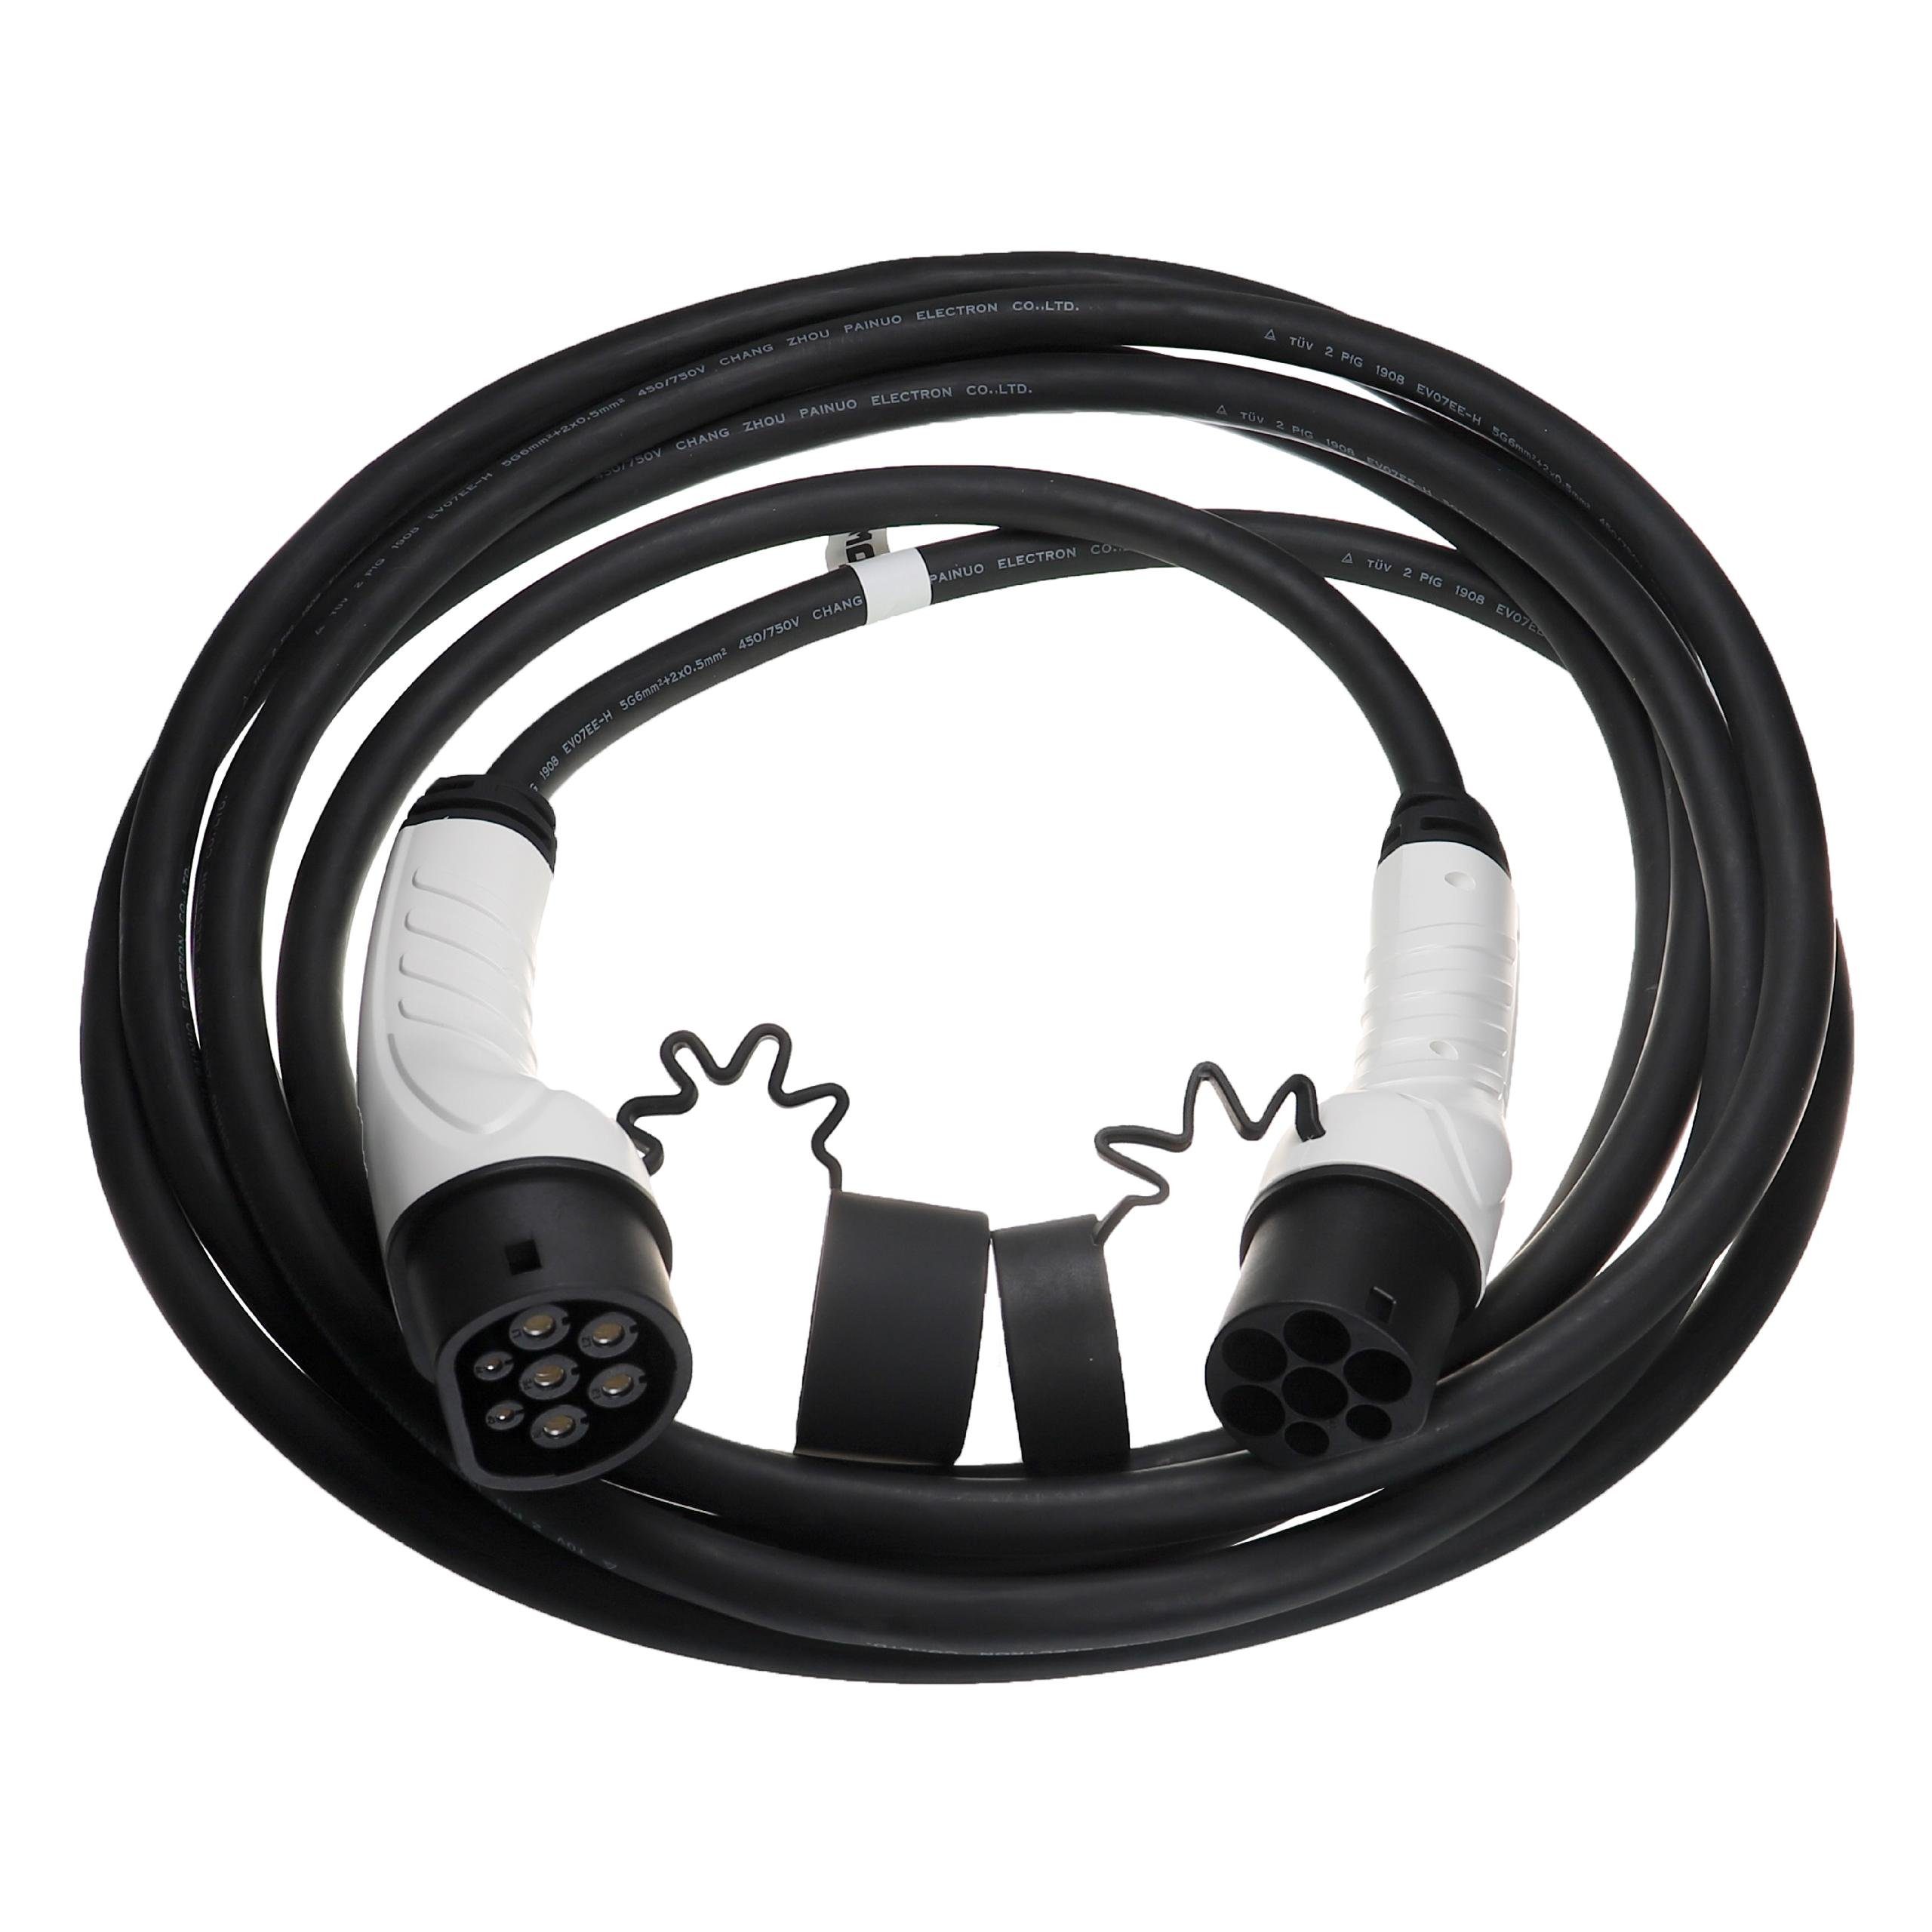 für e-Spacetourer / Citroen Elektro-Kabel passend Elektroauto vhbw Plug-in-Hybrid